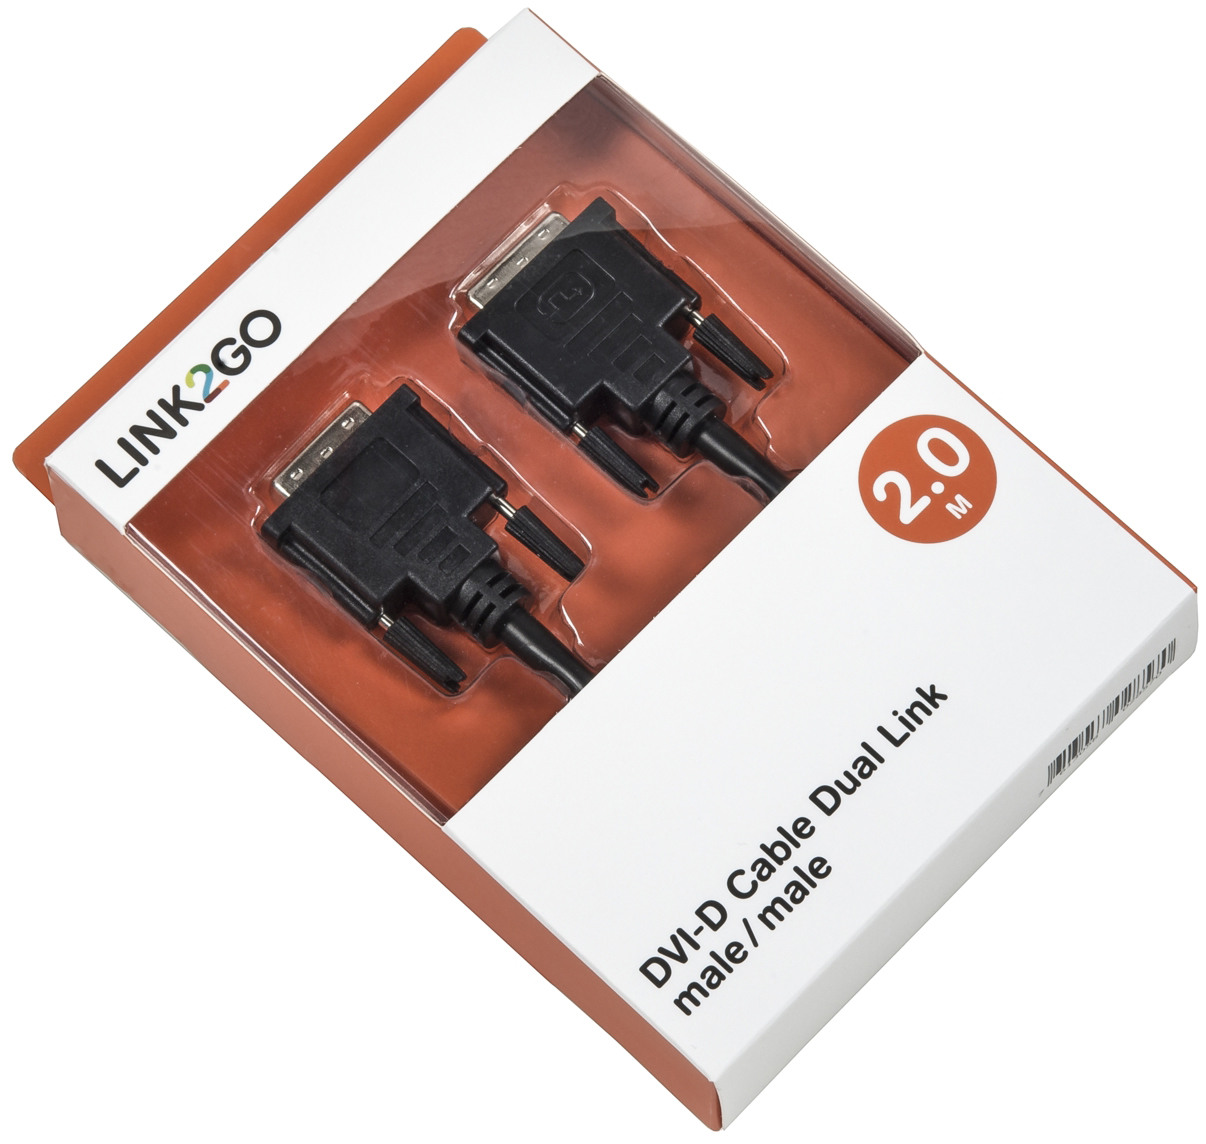 LINK2GO DVI-D Cable, dual link DV2013KBB male/male, 2.0m